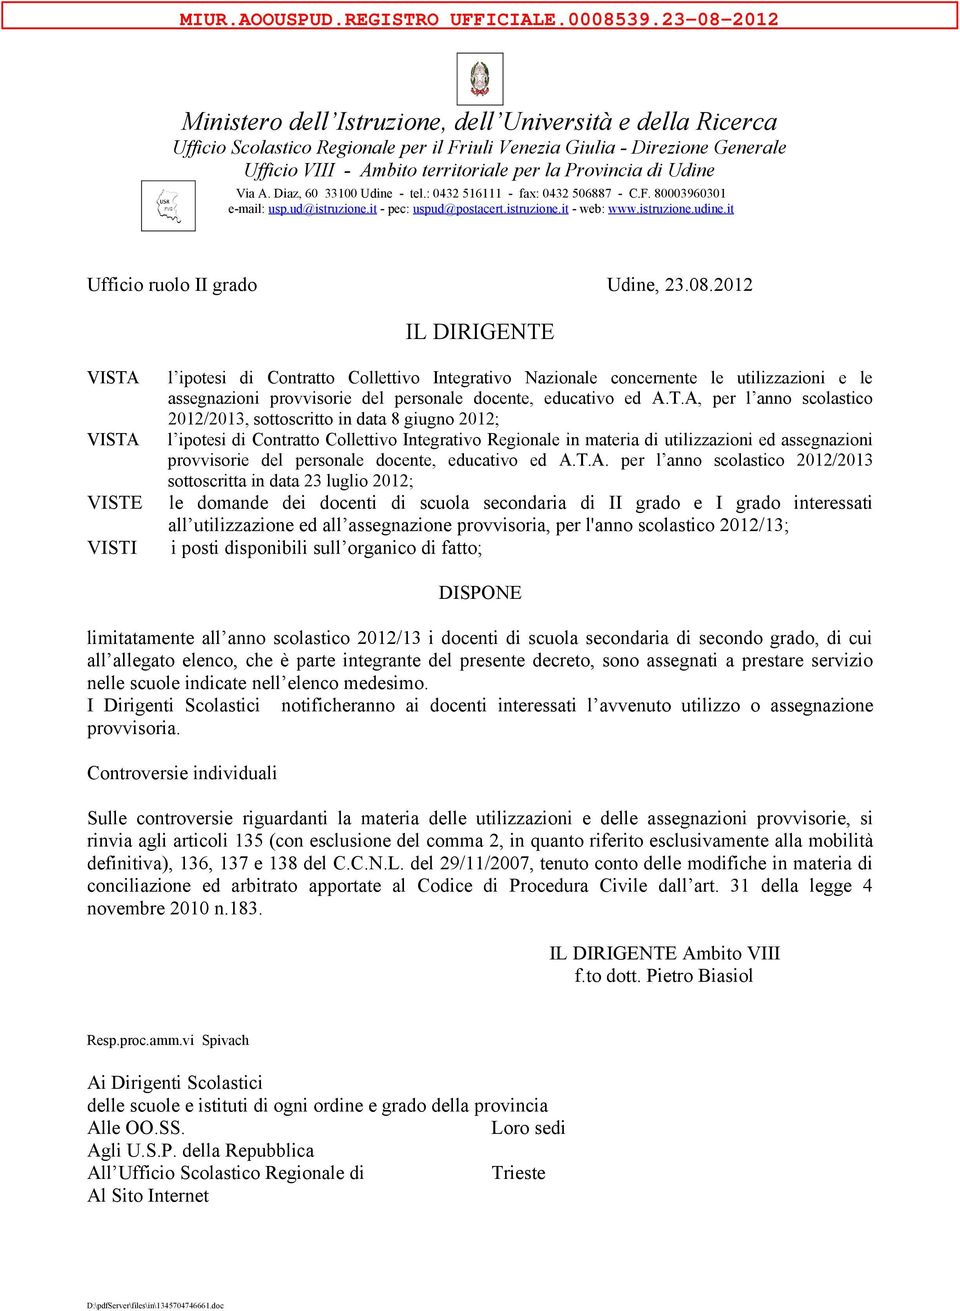 Provincia di Udine Via A. Diaz, 60 33100 Udine - tel.: 0432 516111 - fax: 0432 506887 - C.F. 80003960301 e-mail: usp.ud@istruzione.it - pec: uspud@postacert.istruzione.it - web: www.istruzione.udine.